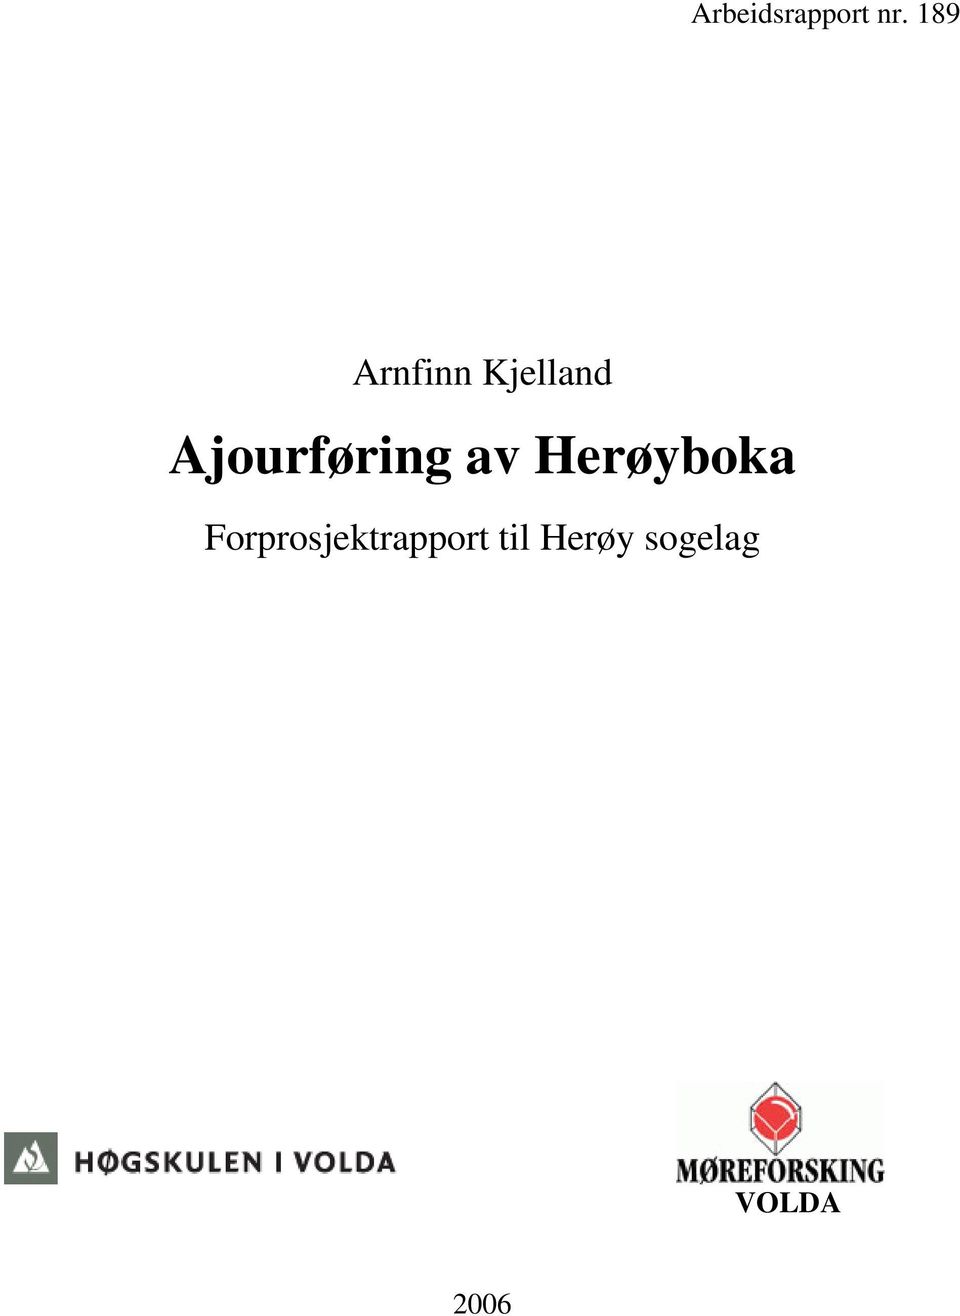 Ajourføring av Herøyboka